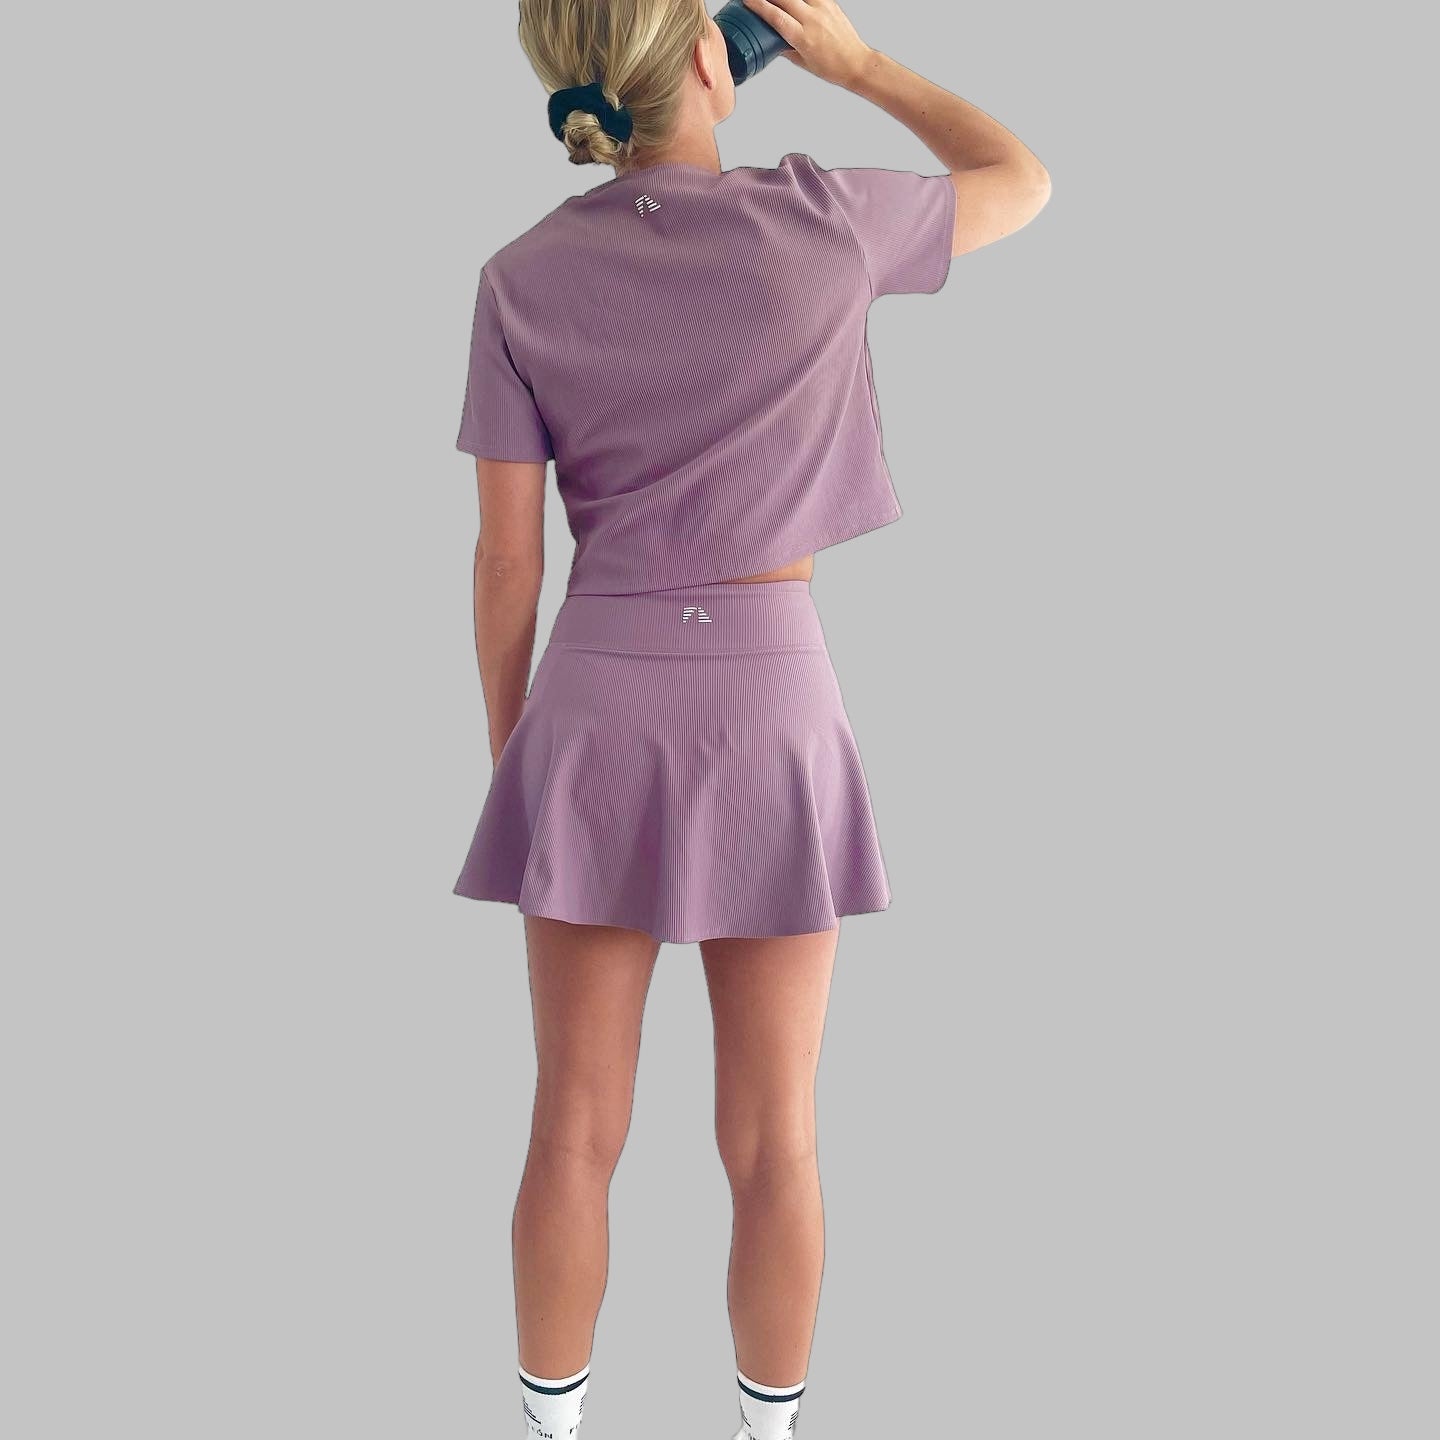 Helkroppsbild bakifrån av modell i ett komplett set med Maya Ribbed Skirt i dusty purple, trendig och sportig look.